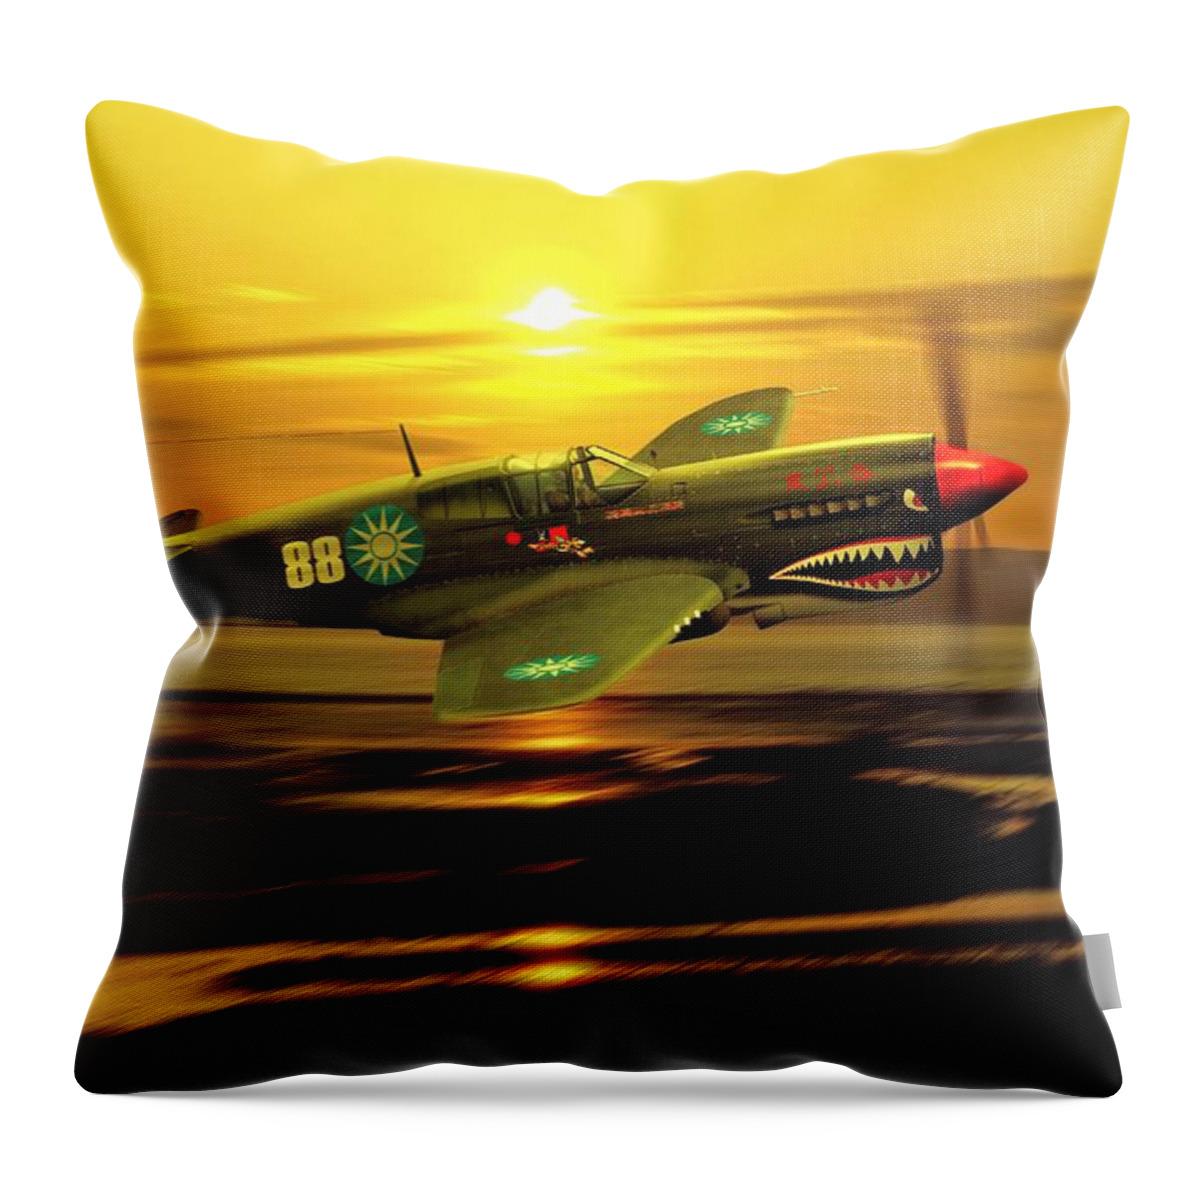 John Wills Art Throw Pillow featuring the digital art P40 Warhawk WW2 US Aviation Art by John Wills